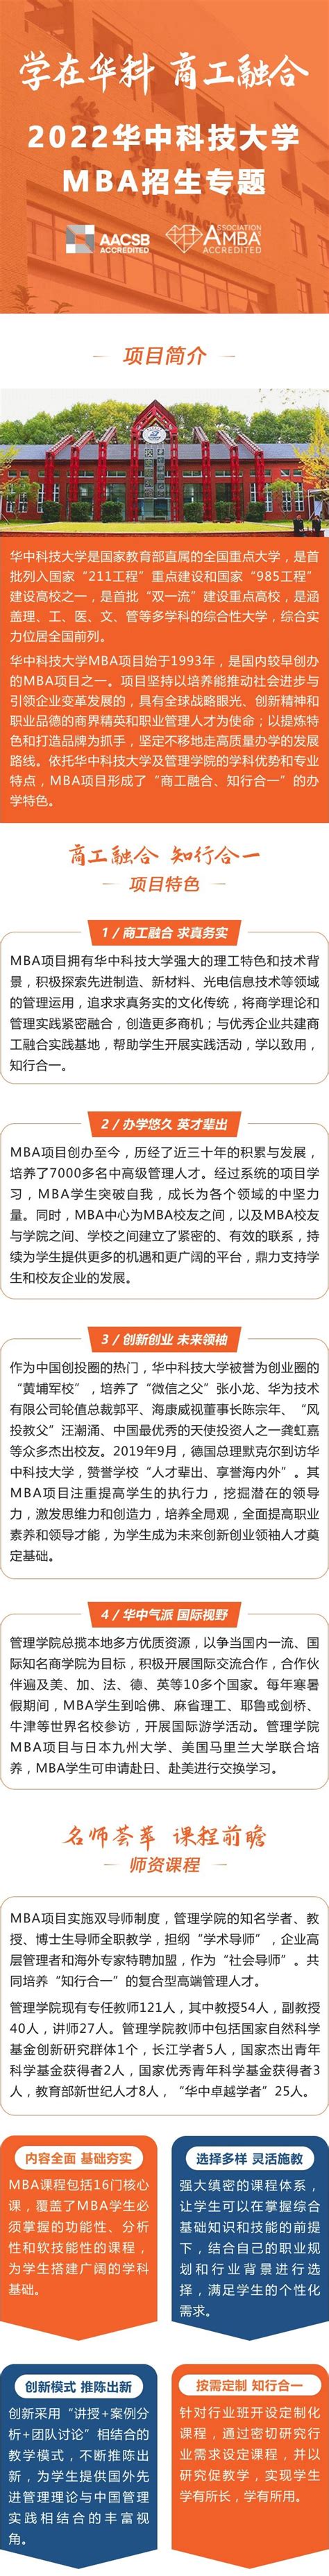 学在华科，商工融合——欢迎报考华中科技大学MBA！ - MBAChina网